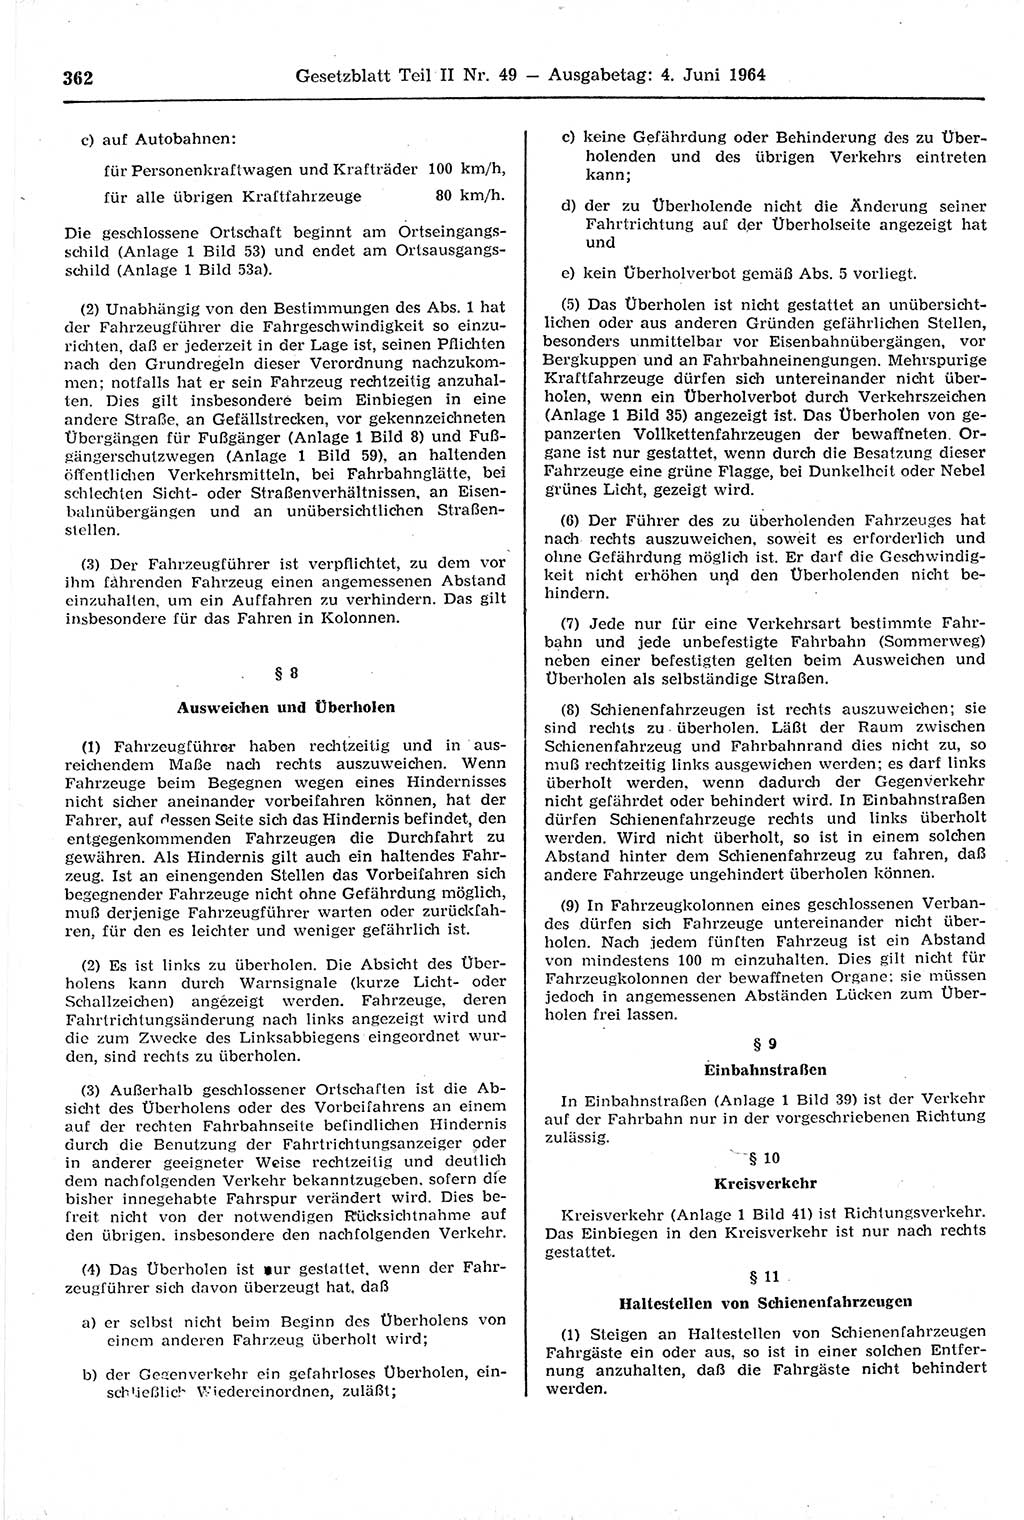 Gesetzblatt (GBl.) der Deutschen Demokratischen Republik (DDR) Teil ⅠⅠ 1964, Seite 362 (GBl. DDR ⅠⅠ 1964, S. 362)